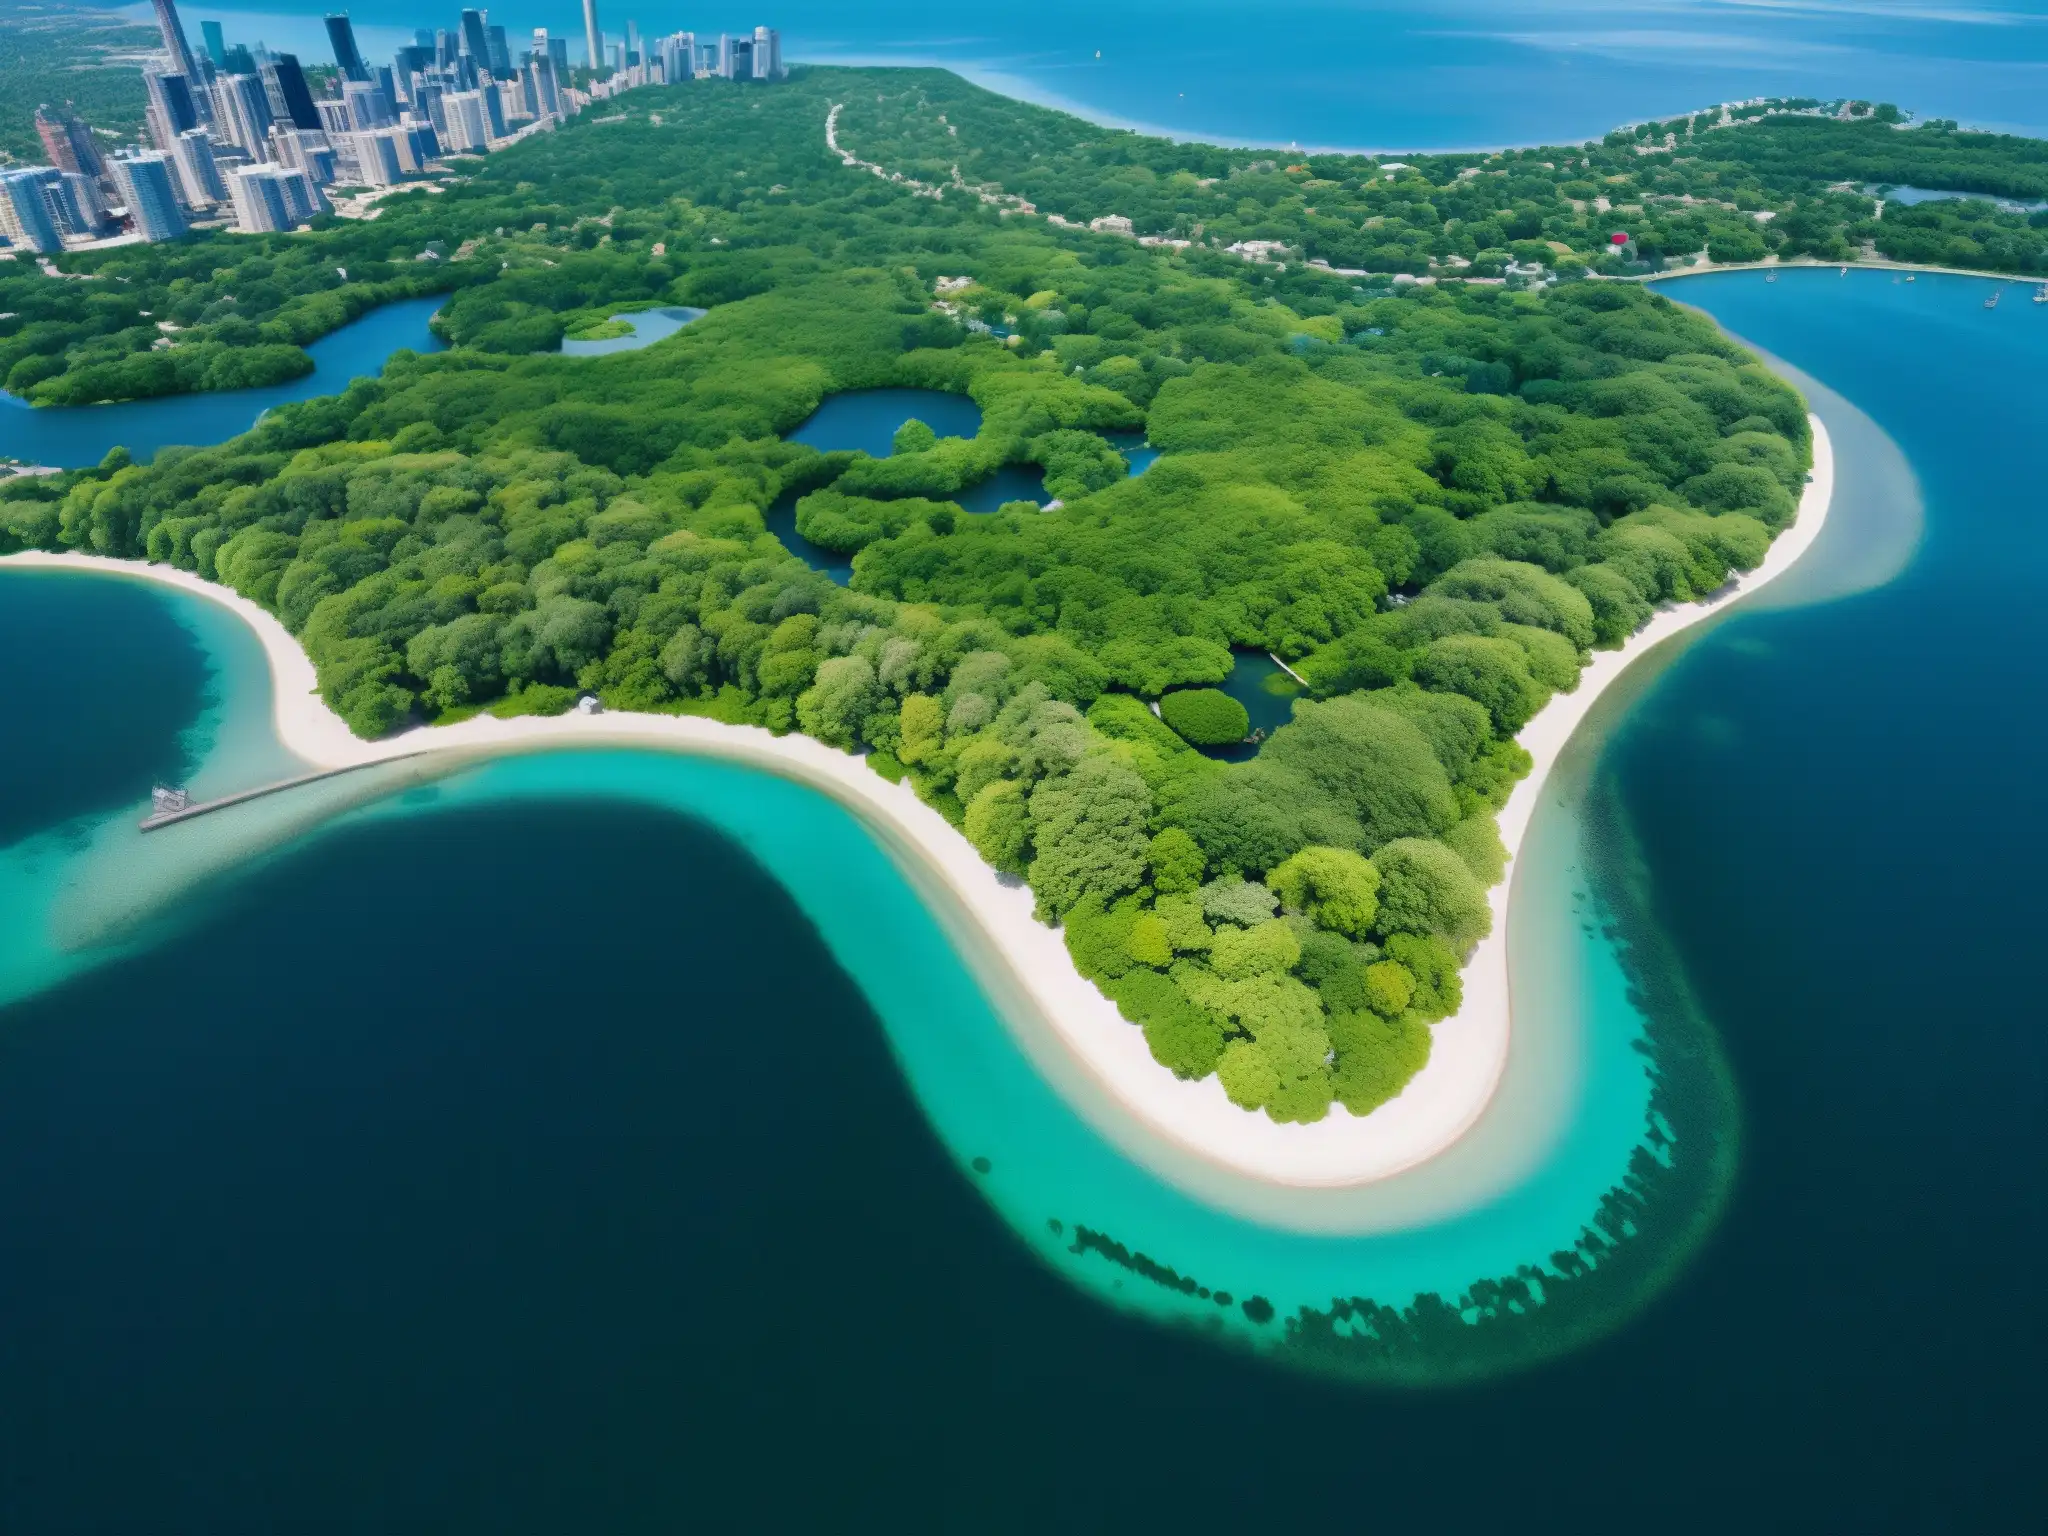 Vista aérea de las Toronto Islands con exuberante vegetación, caminos sinuosos y aguas azules